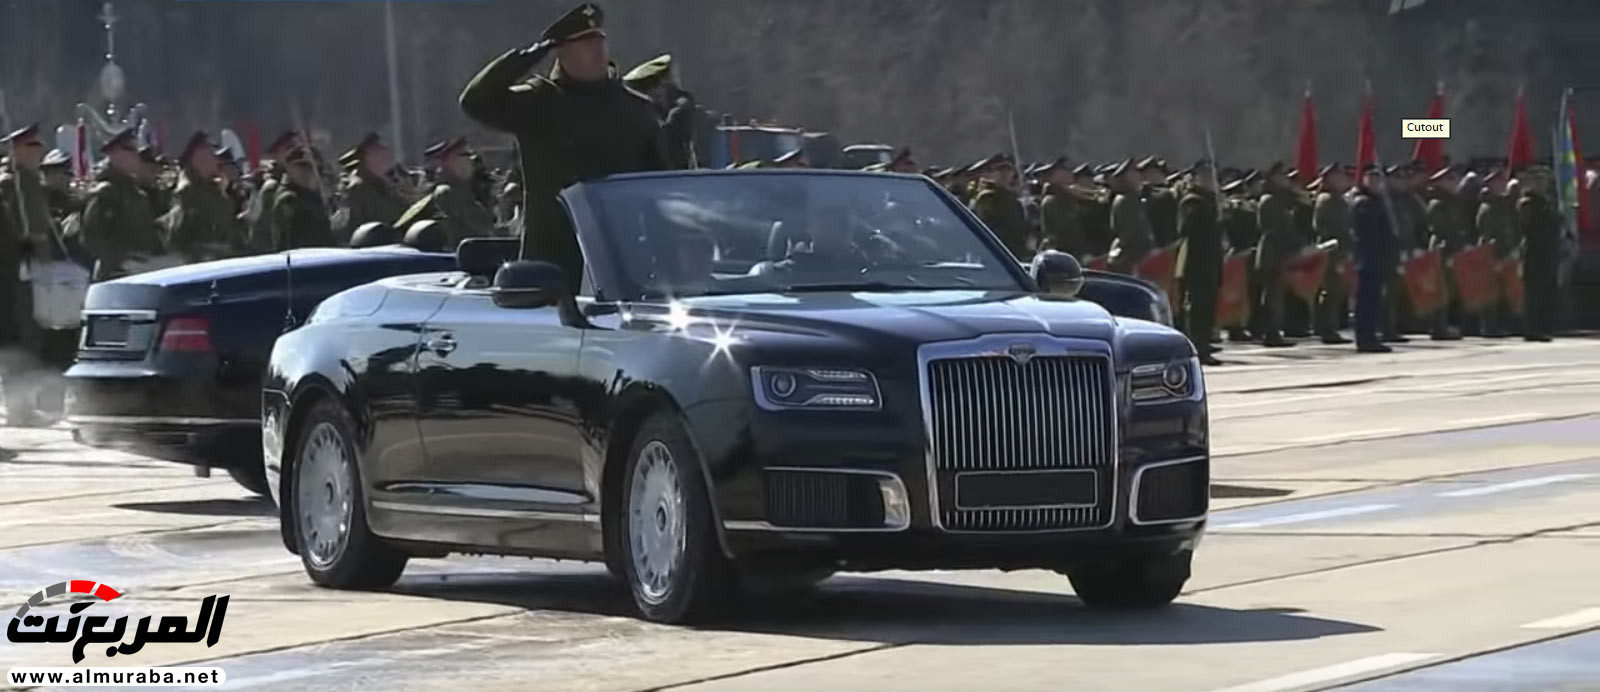 "بالفيديو" سيارة اوروس كشف الروسية تعتقد أنها منافسة رولزرويس داون 6